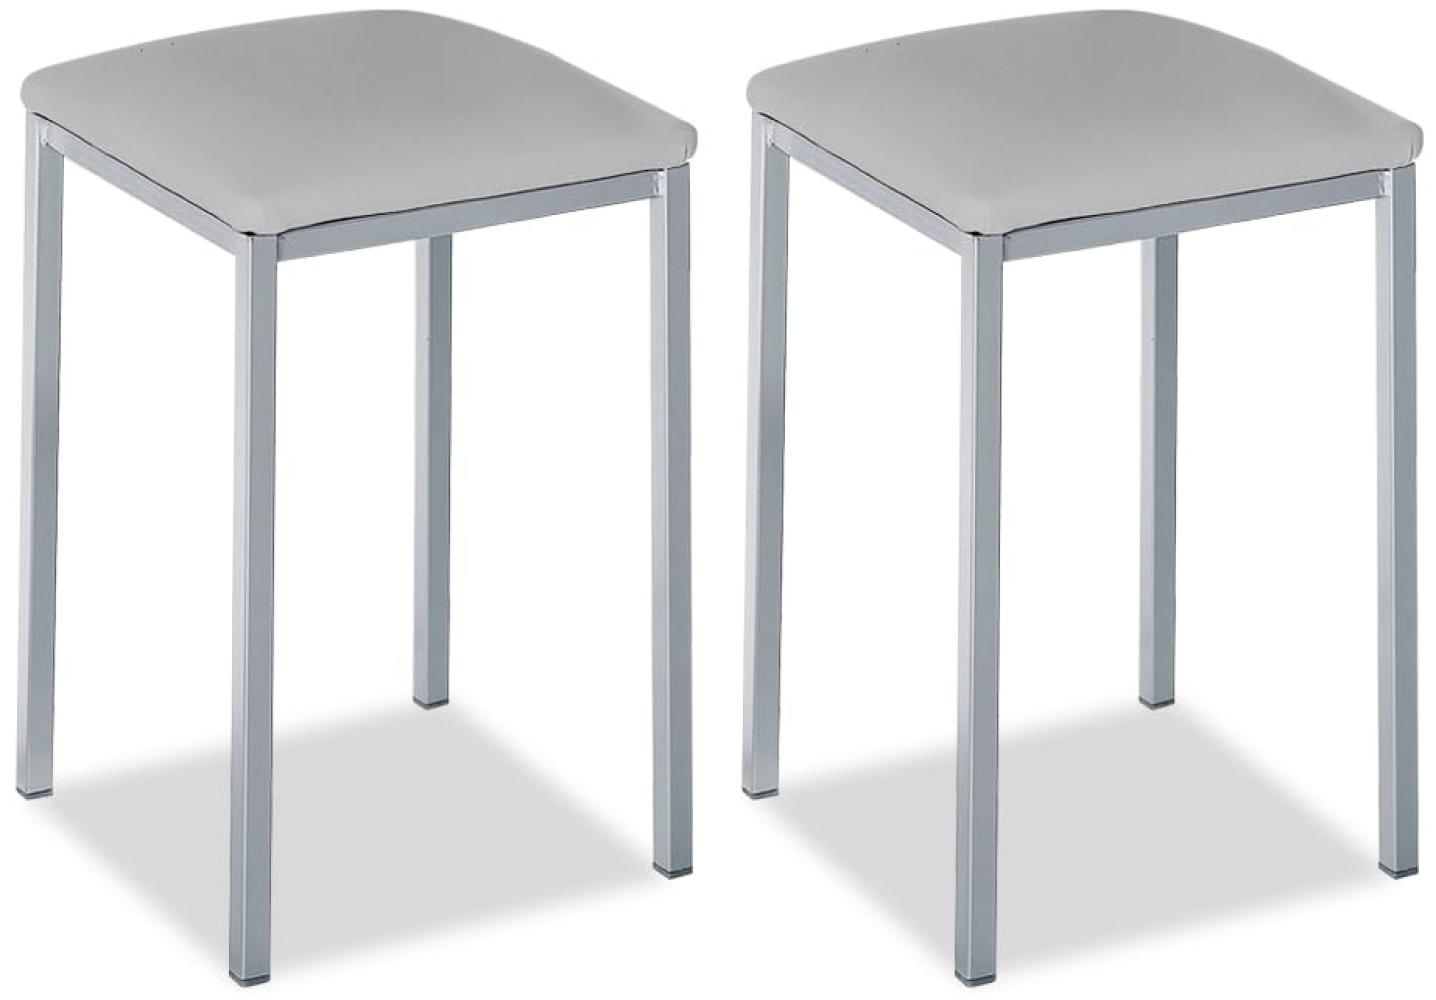 ASTIMESA - Gepolsterter Küchenhocker - Solide und Feste Struktur - Gestell Farbe Aluminium und Sitzfläche aus Kunstleder - Sitzfarbe: Grau. Lieferumfang: 2 Stück, Maße: 35 x 35 x 45 cm Bild 1